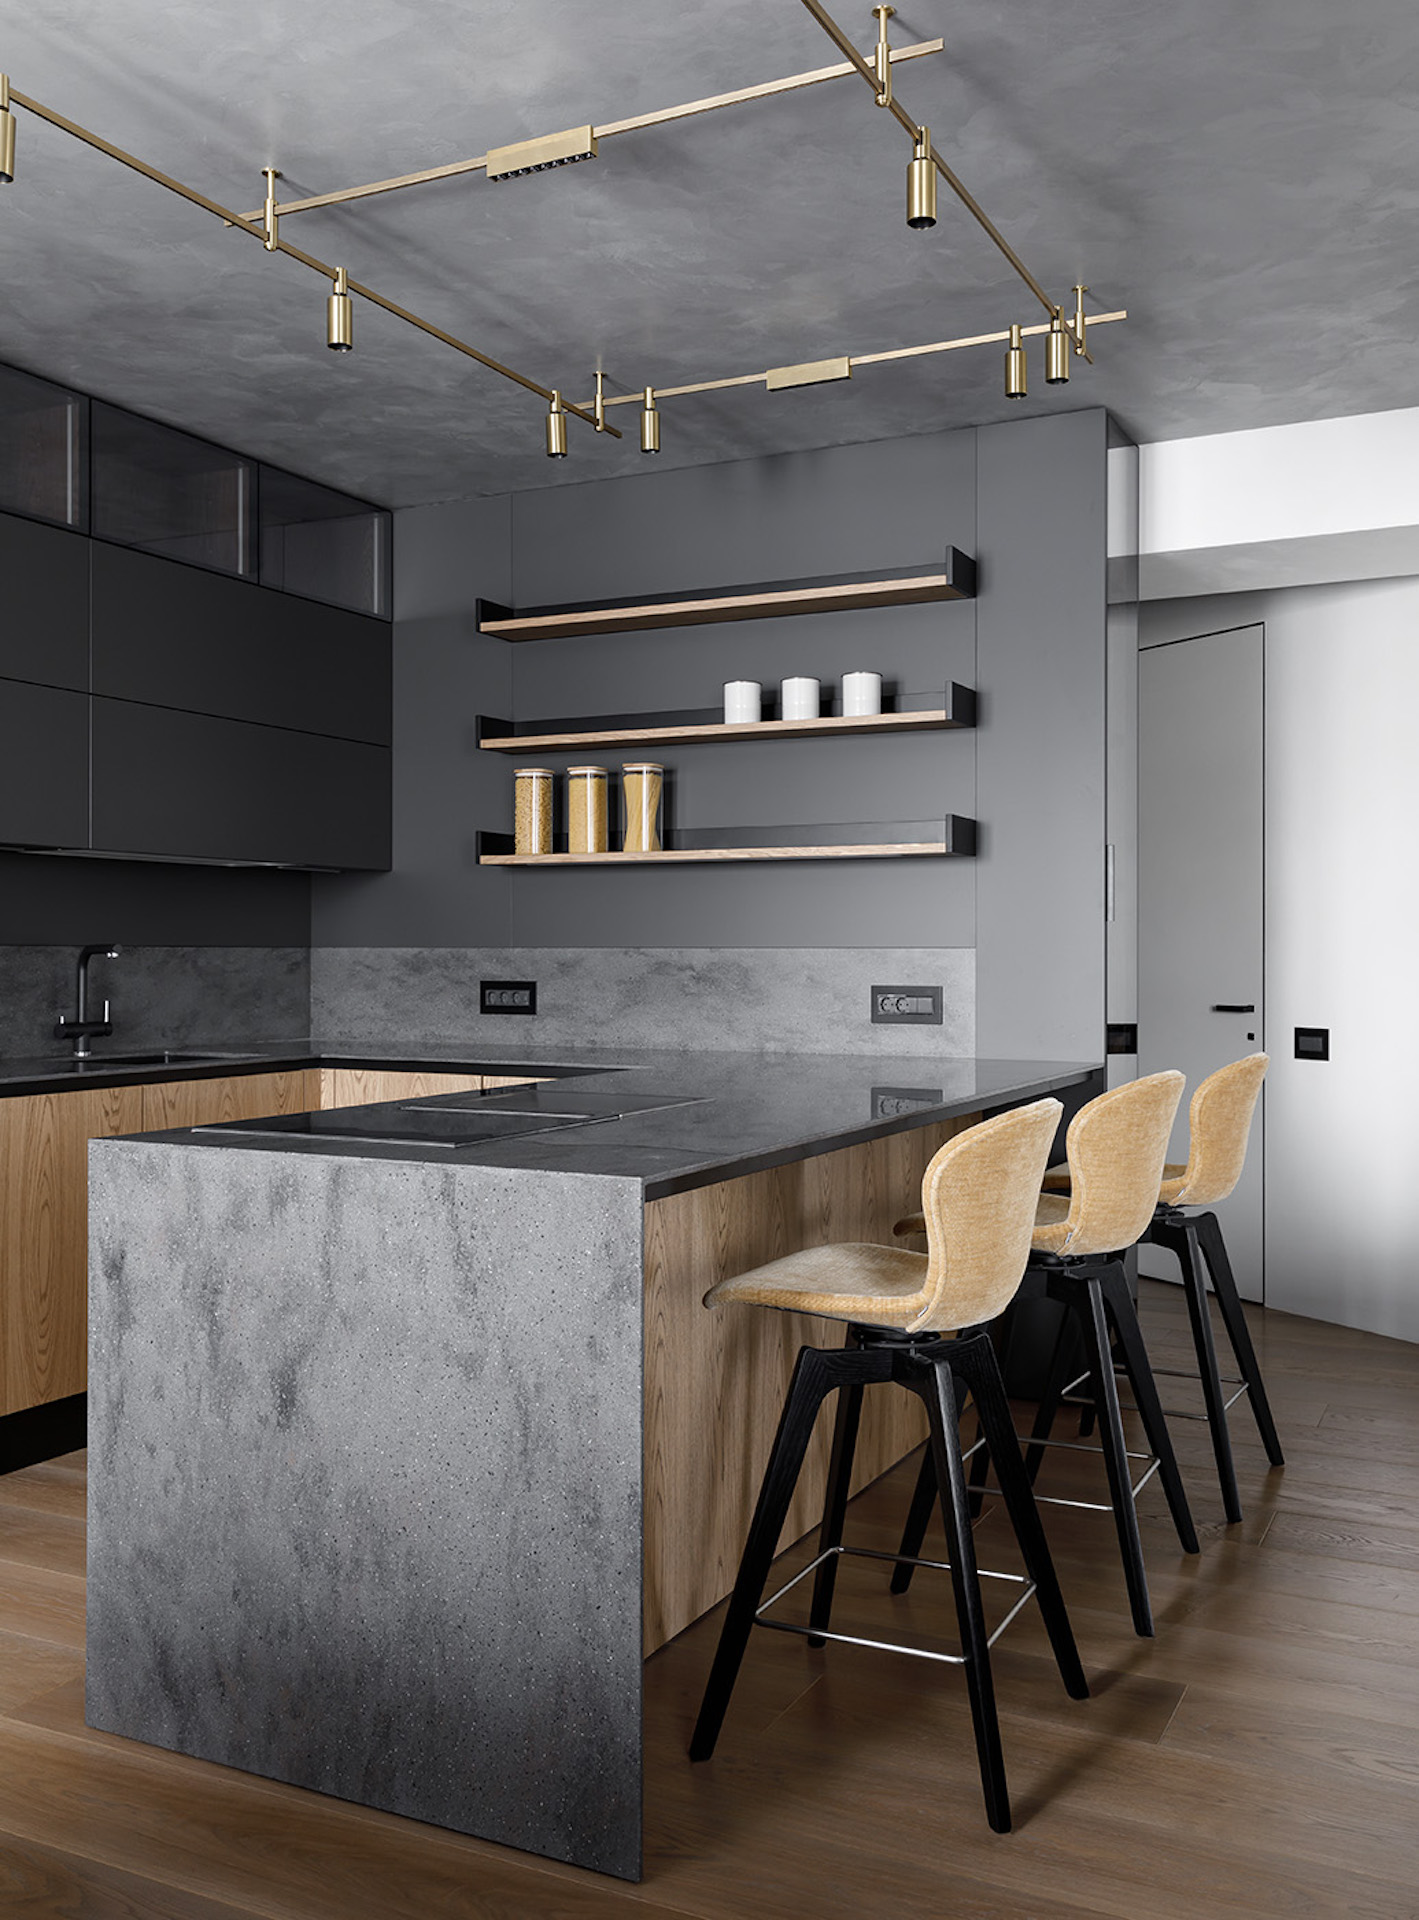 Крупные минималистичные формы кухни задают архитектуру помещения - проекты Setus Design